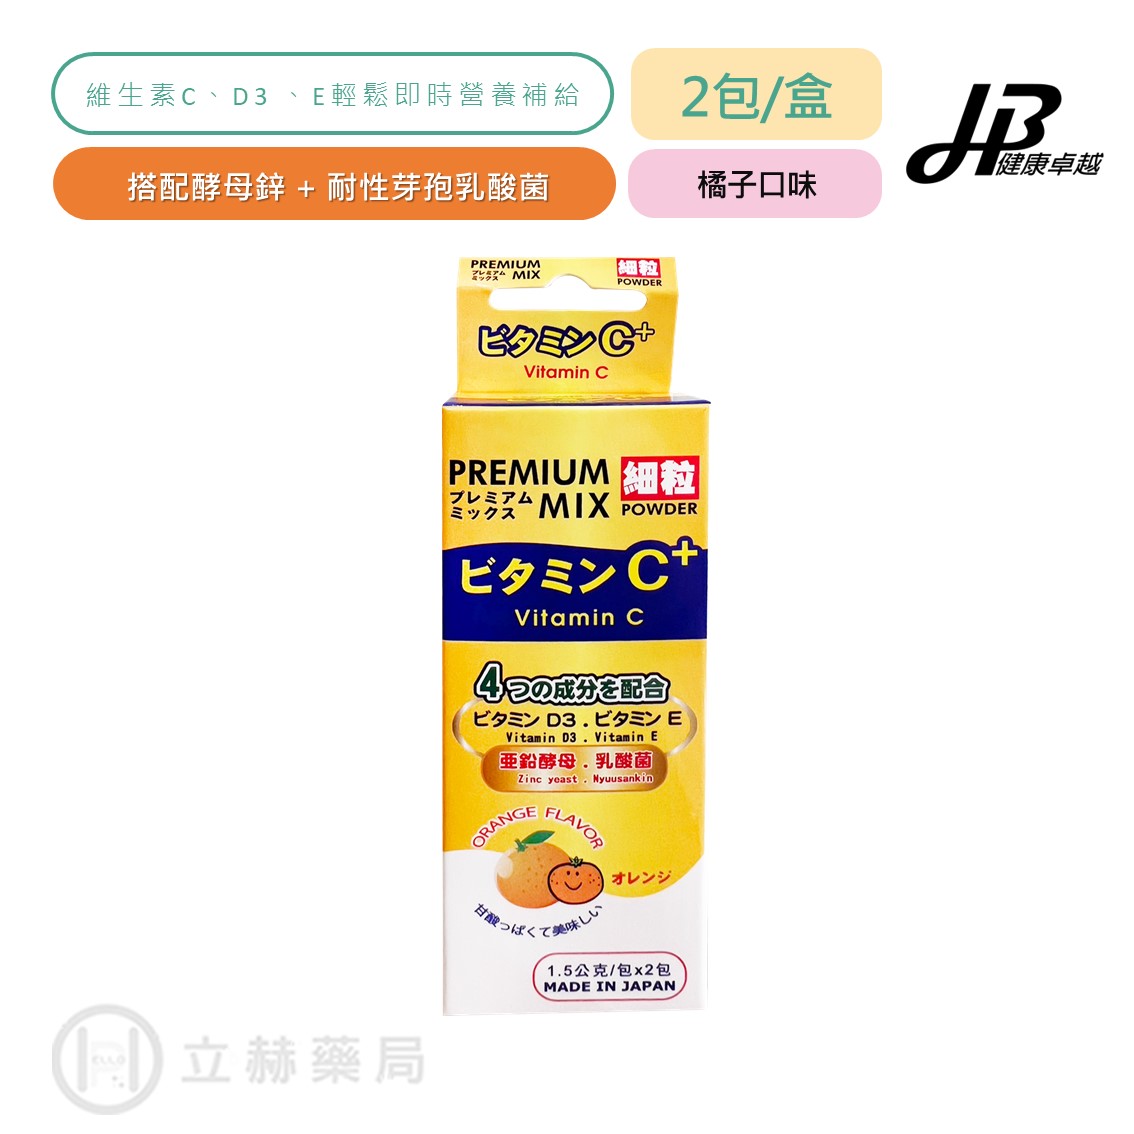 卓越維他特級C粉 Vitamin C + premium mix powder 2入/盒【健康卓越】維他命C 立赫藥局